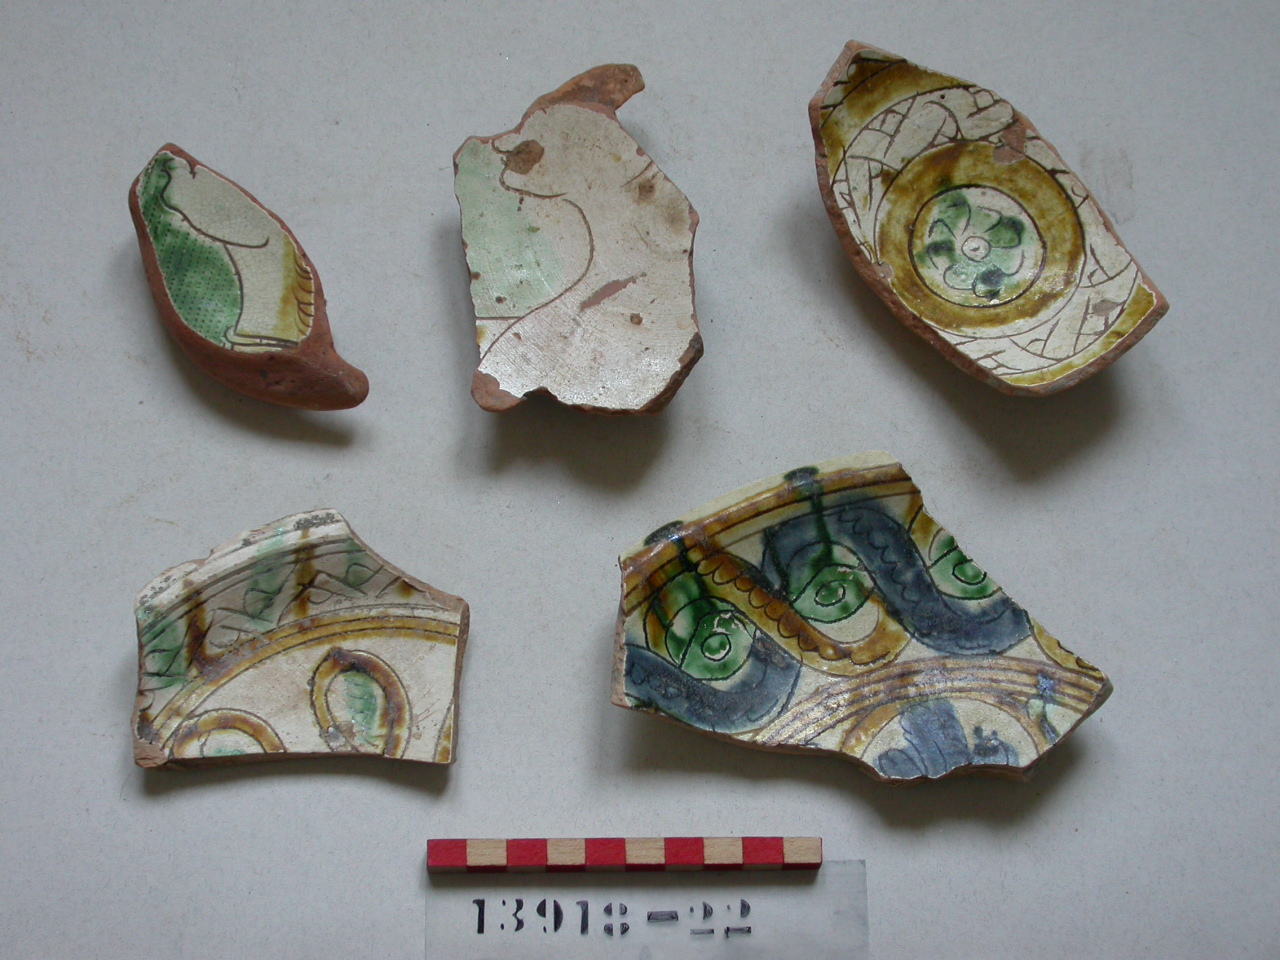 motivi decorativi geometrici e vegetali (piattello, frammento) - ambito veneziano (secc. XVI/ XVII)